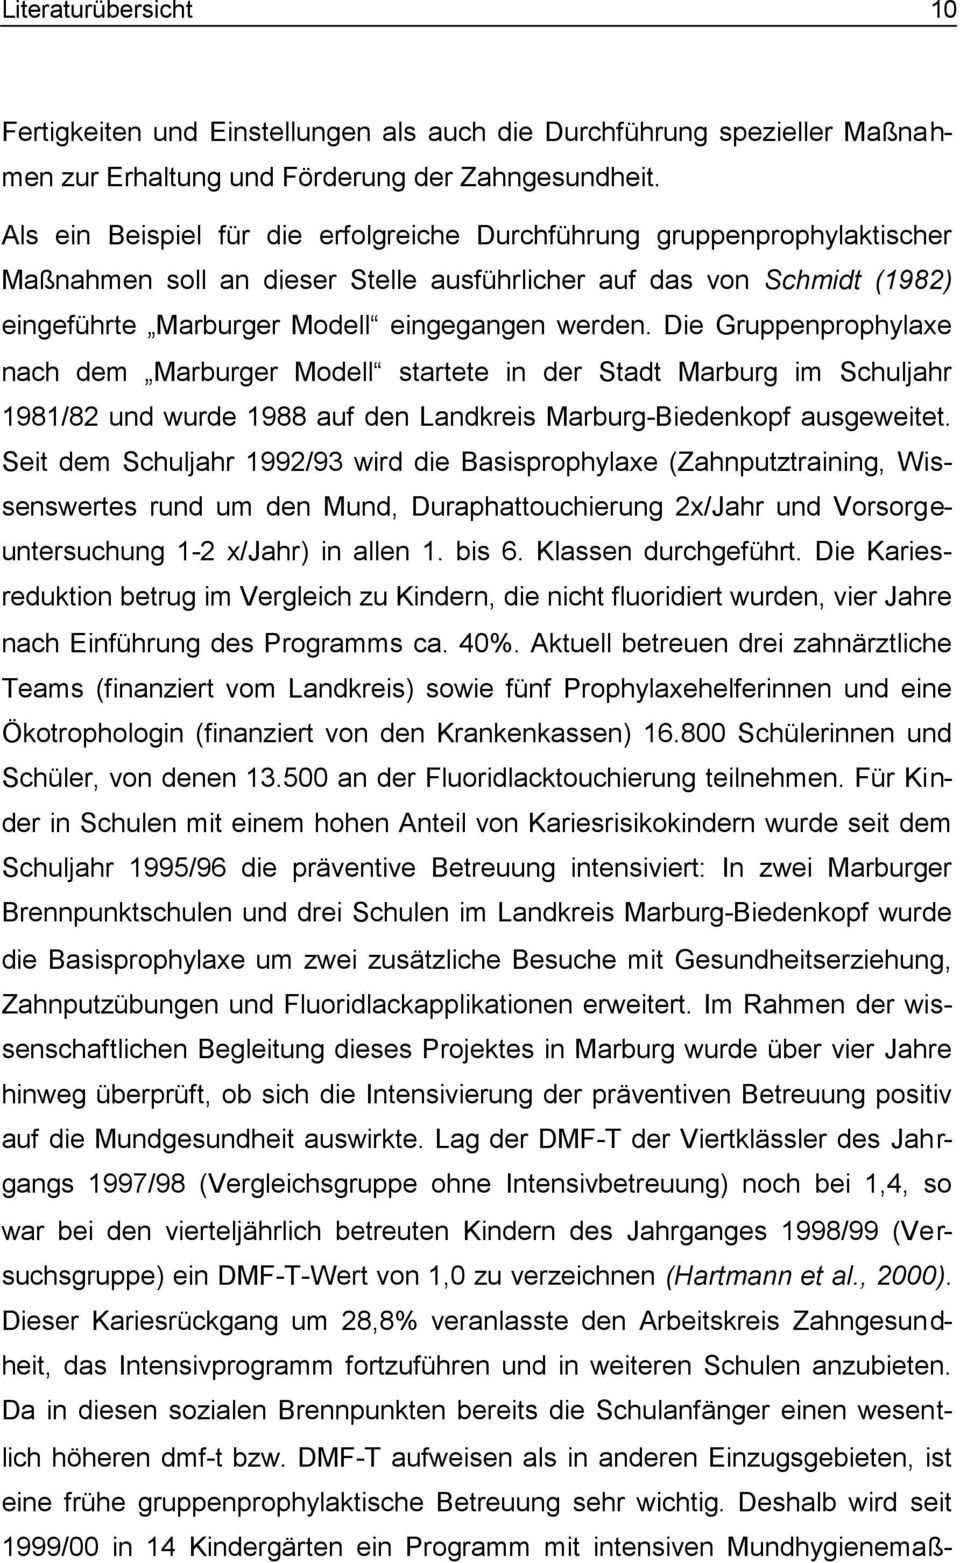 Die Gruppenprophylaxe nach dem Marburger Modell startete in der Stadt Marburg im Schuljahr 1981/82 und wurde 1988 auf den Landkreis Marburg-Biedenkopf ausgeweitet.